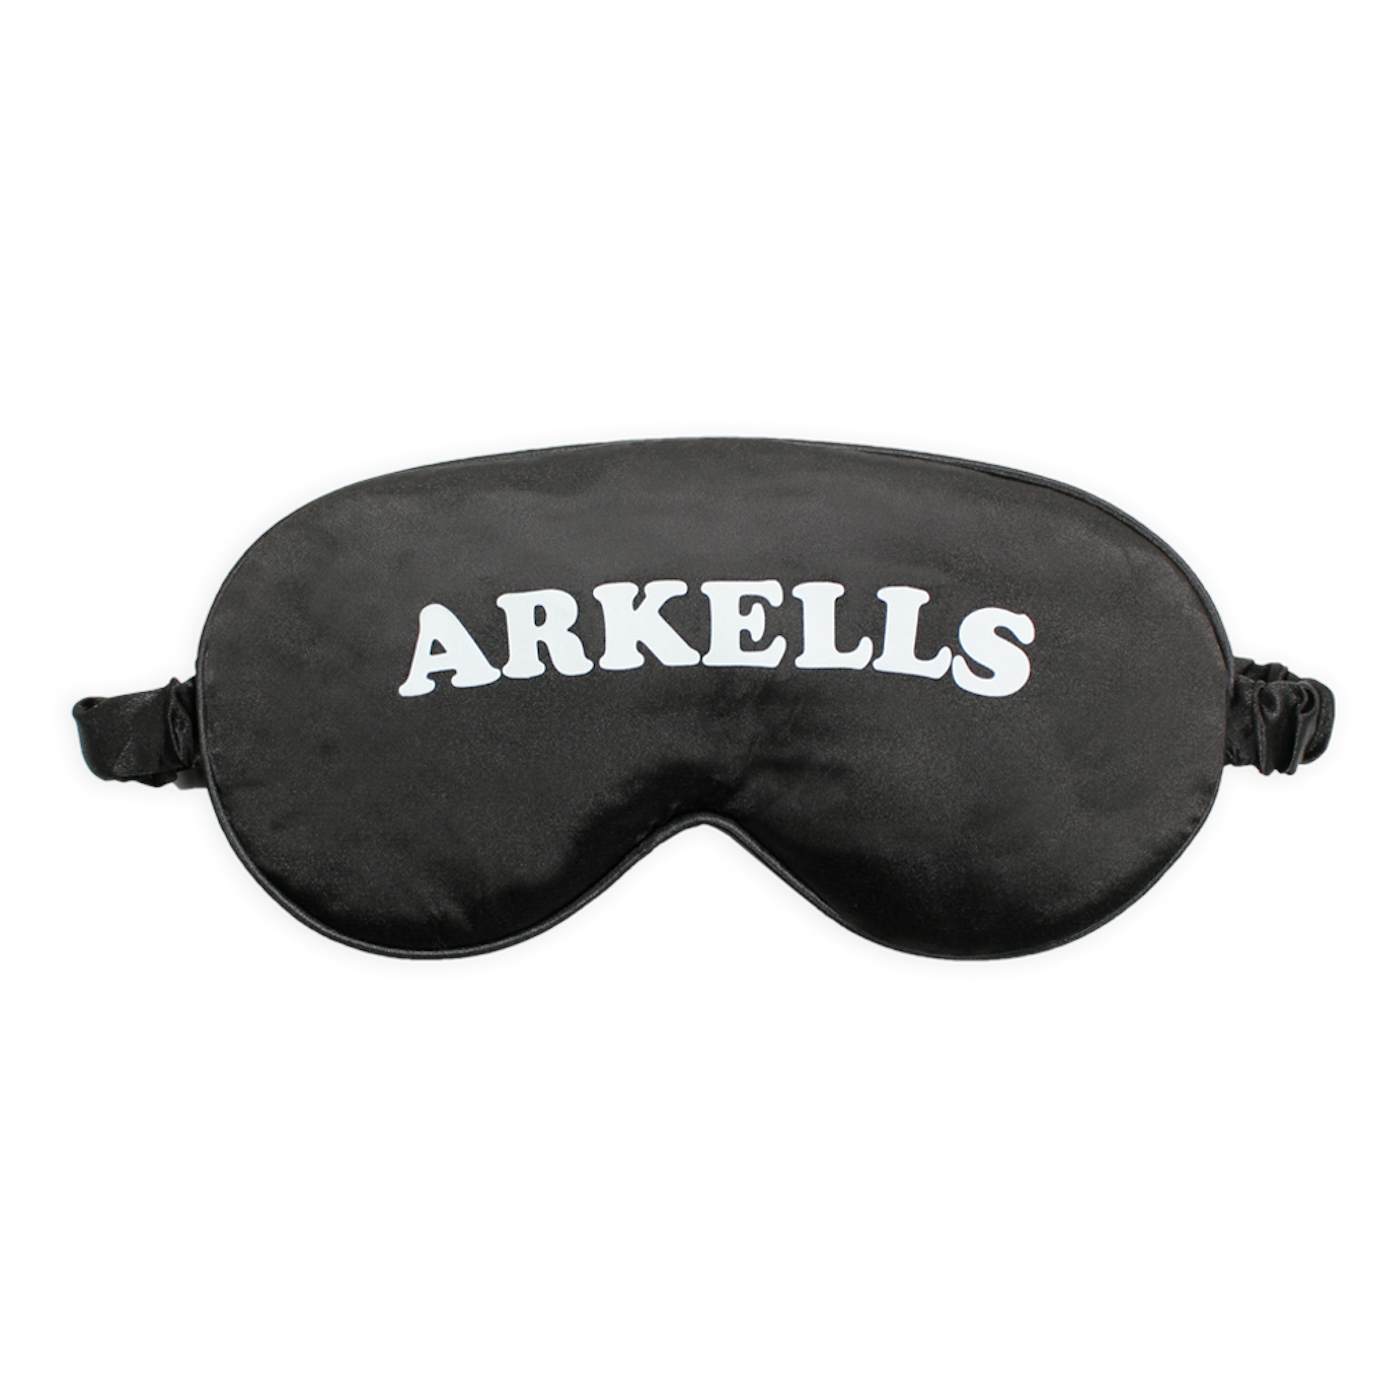 ARKELLS Sleeping Mask